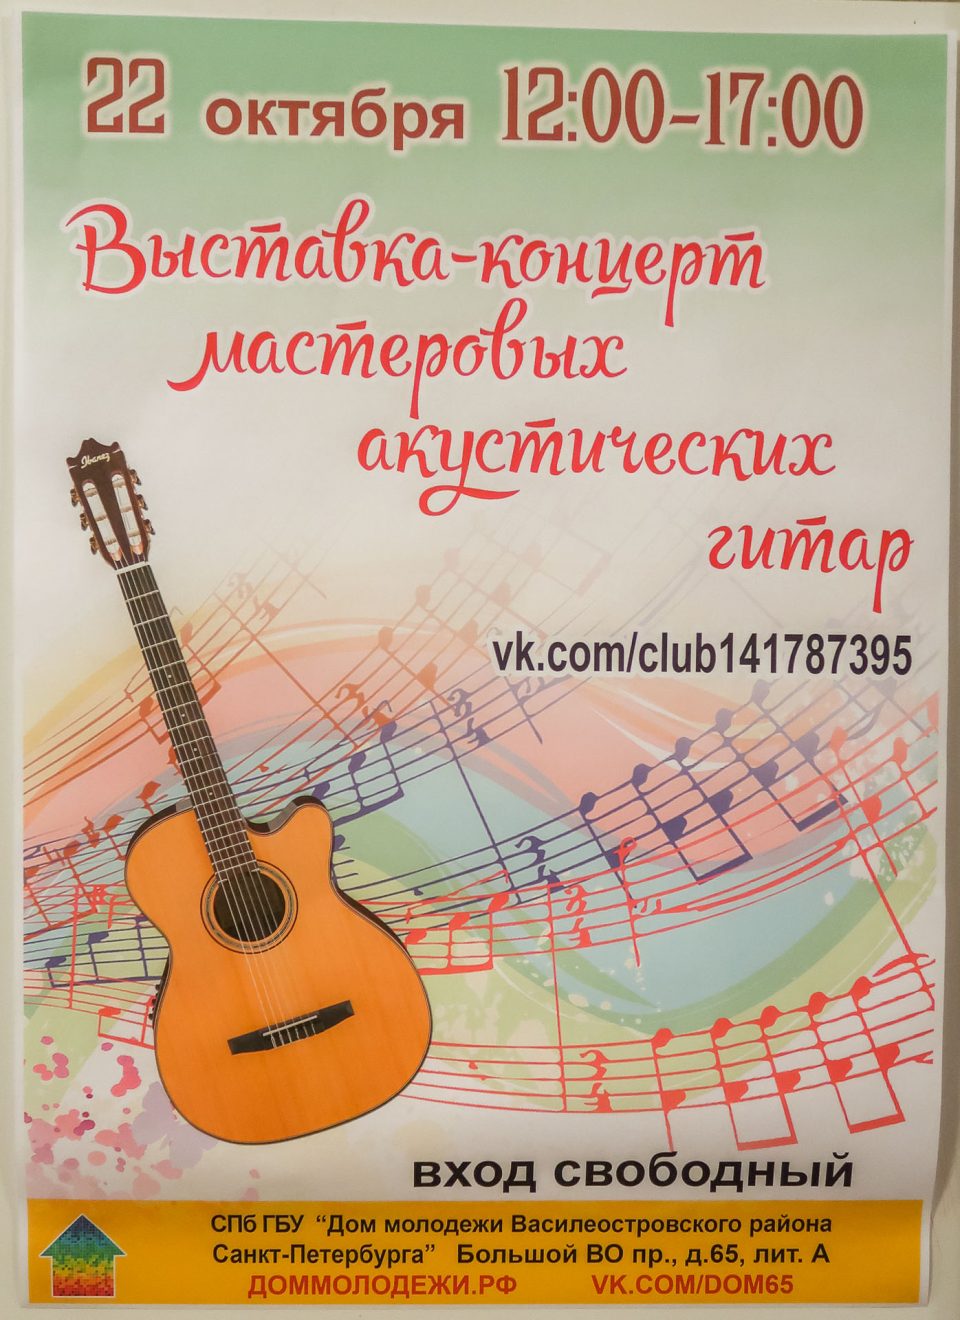 Выставка — концерт мастеровых акустических гитар